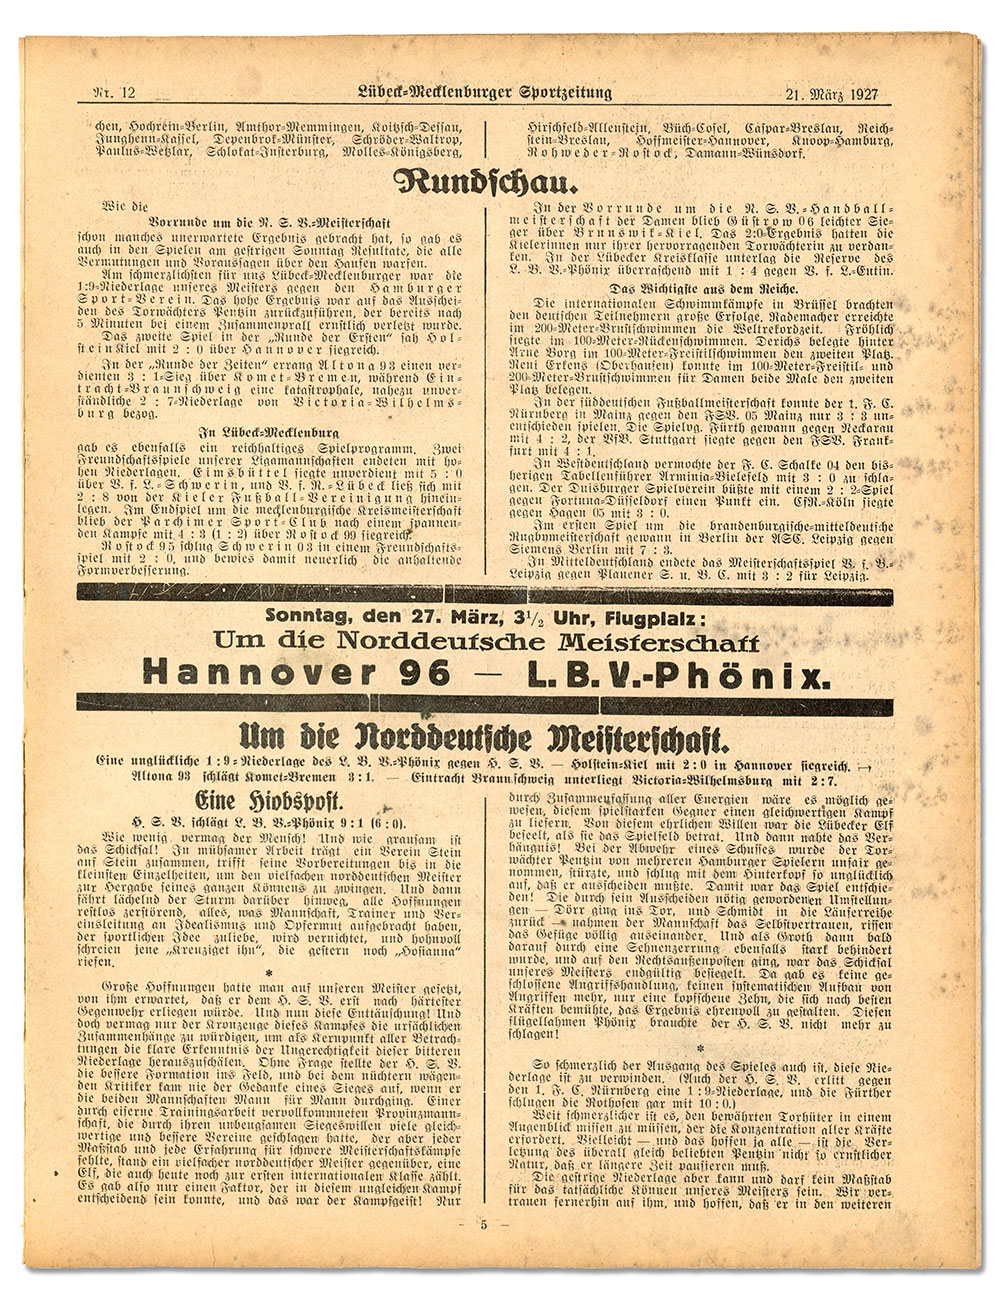 Die Lübeck-Mecklenburger Sport-Zeitung